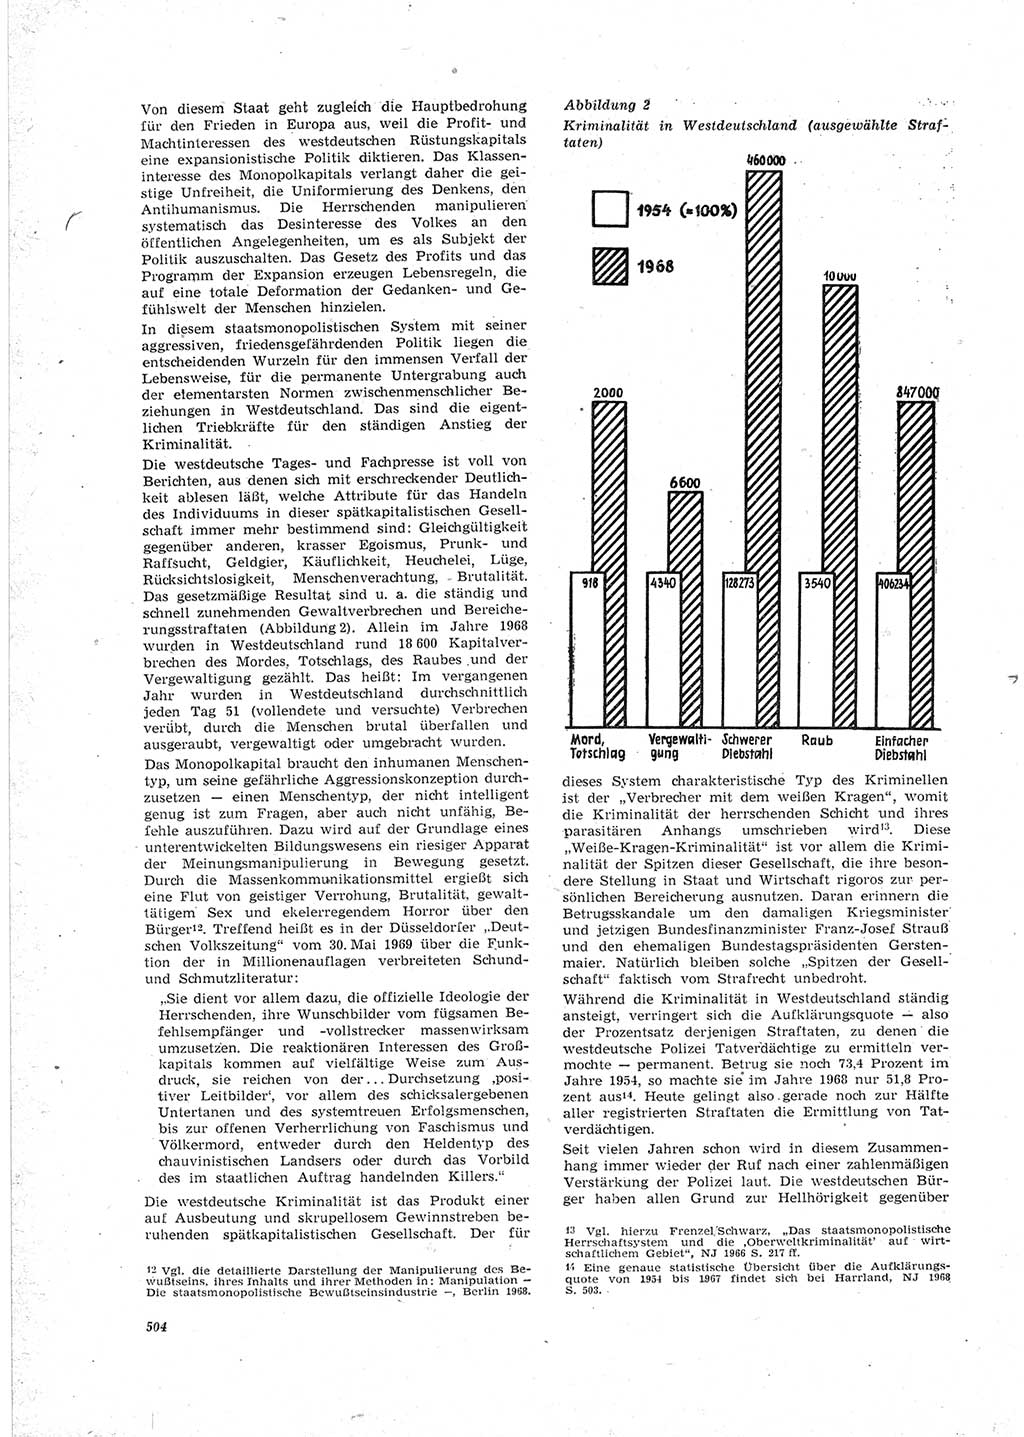 Neue Justiz (NJ), Zeitschrift für Recht und Rechtswissenschaft [Deutsche Demokratische Republik (DDR)], 23. Jahrgang 1969, Seite 504 (NJ DDR 1969, S. 504)